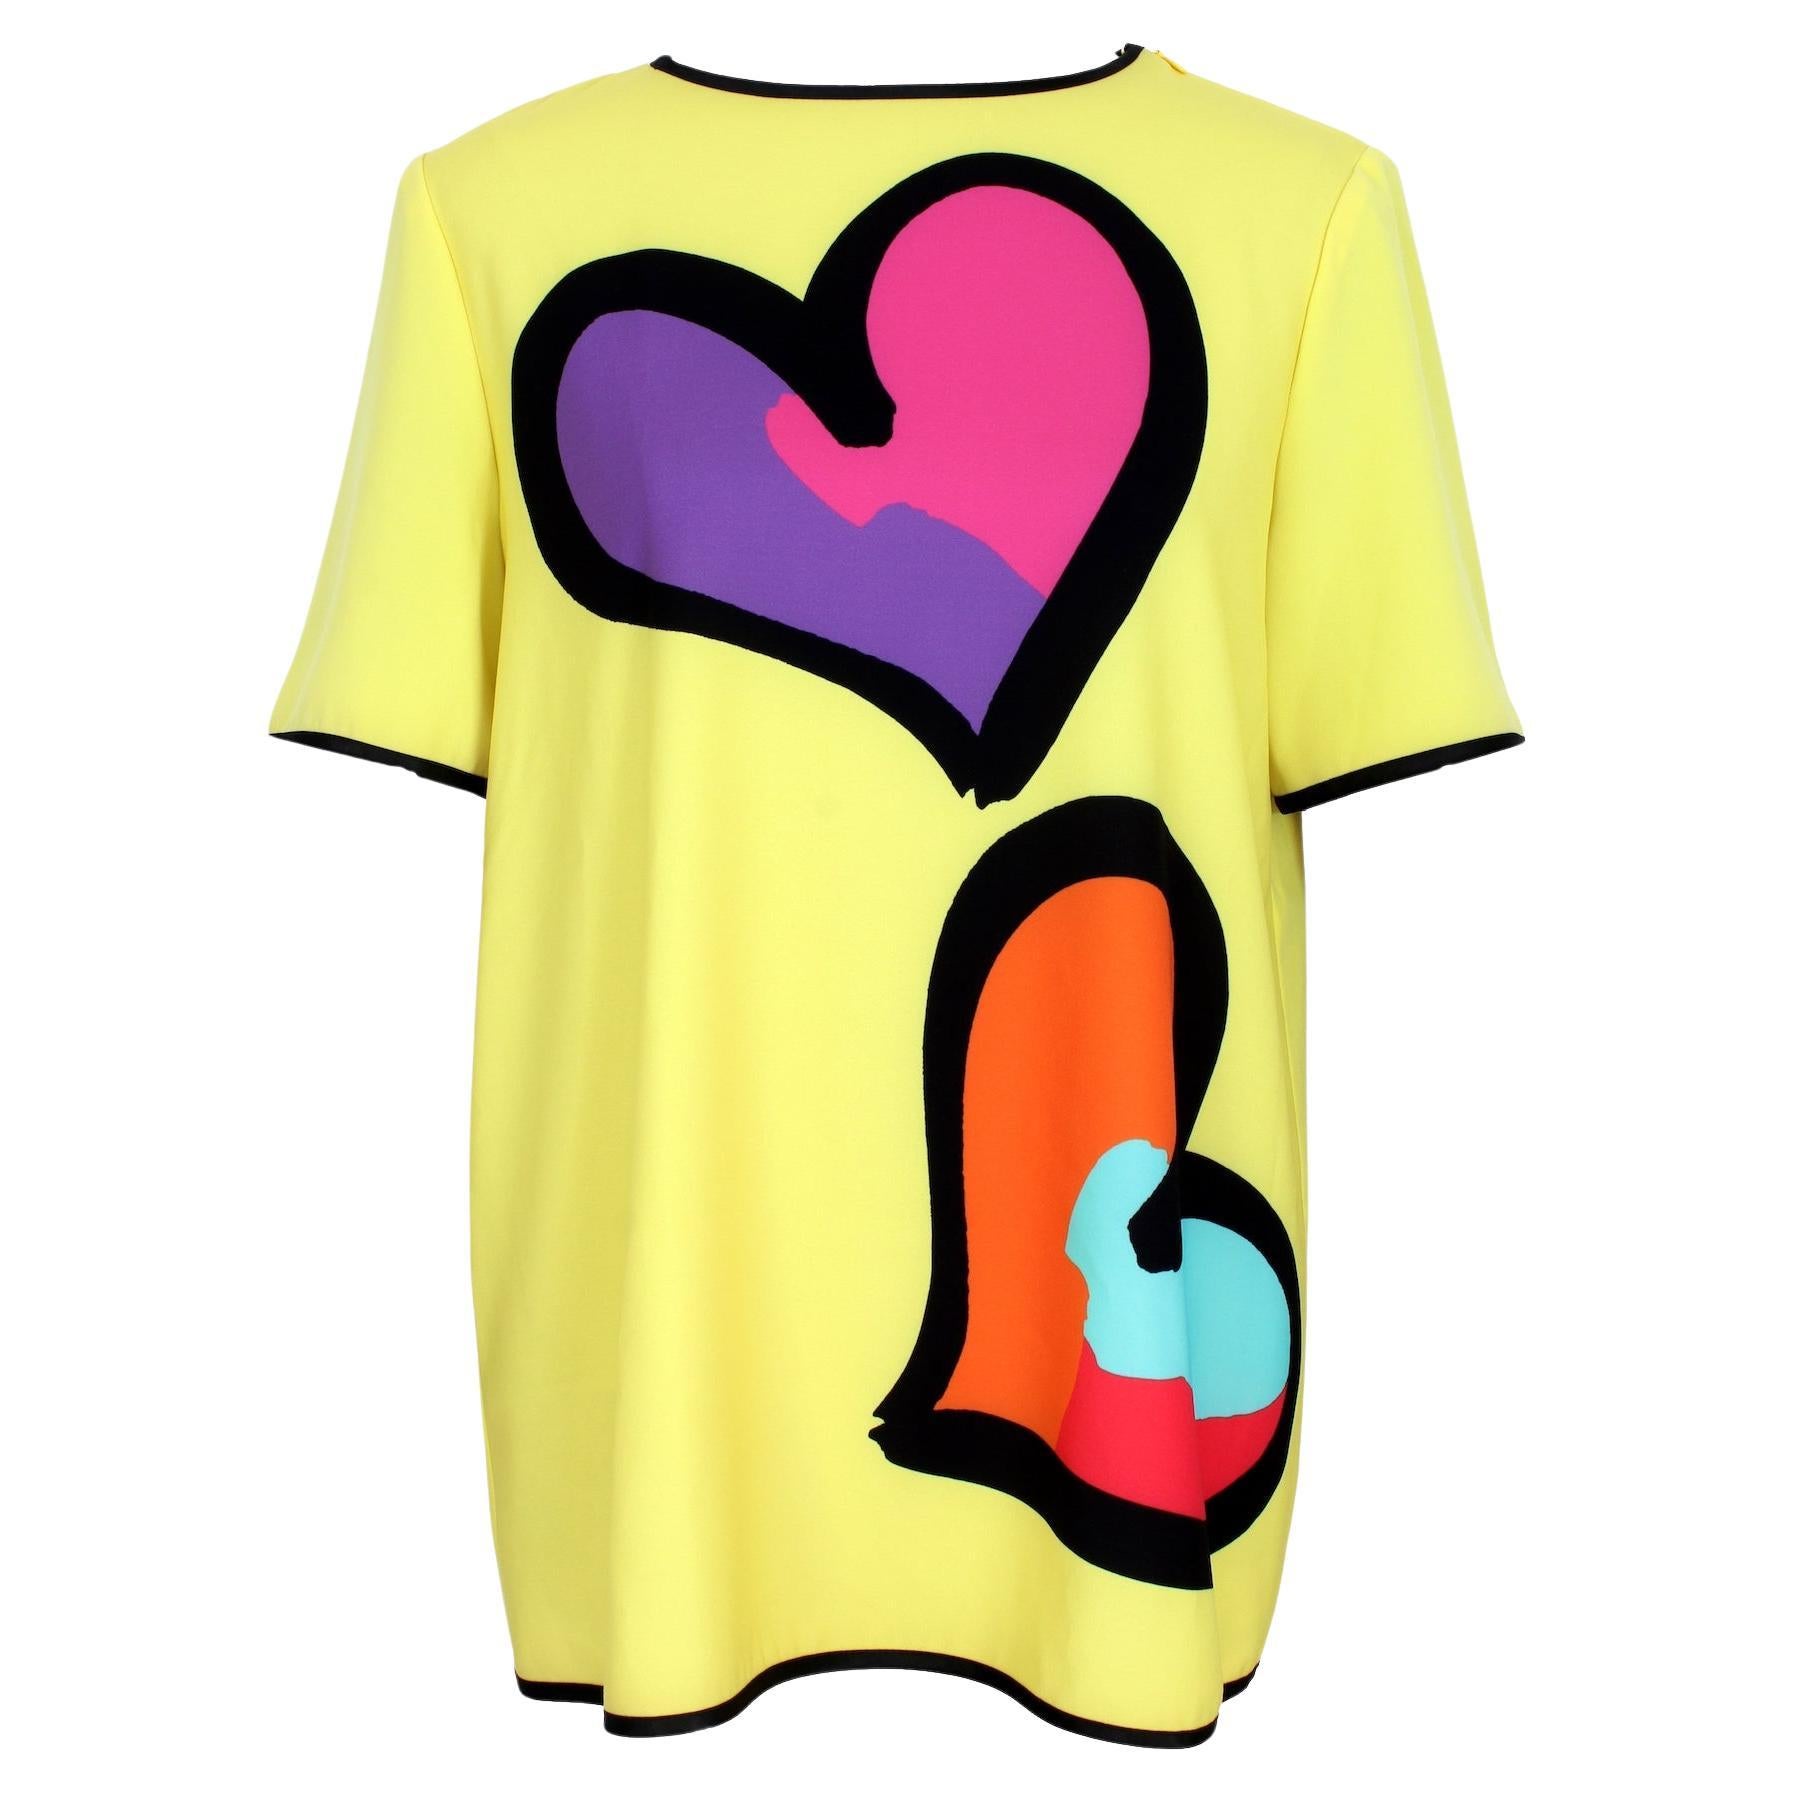 Moschino Yellow Heart Classic T- Shirt 2000s